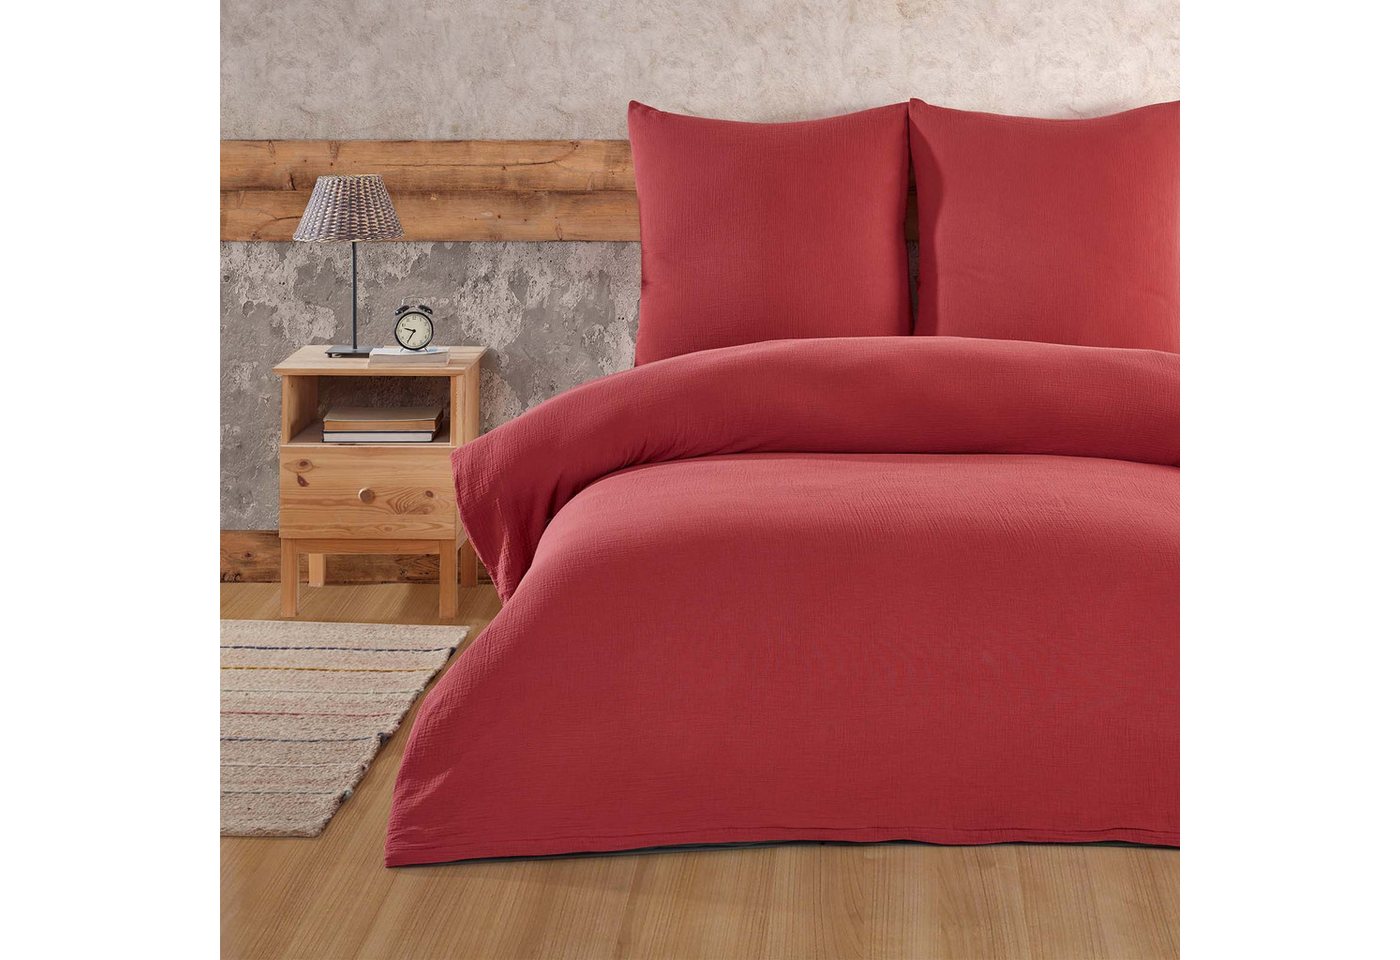 Bettwäsche Luxury, Buymax, Musselin 100% Baumwolle, 3 teilig, 200x220 cm, Bettbezug Set, Uni einfarbig, mit Reißverschluss, Rot von Buymax